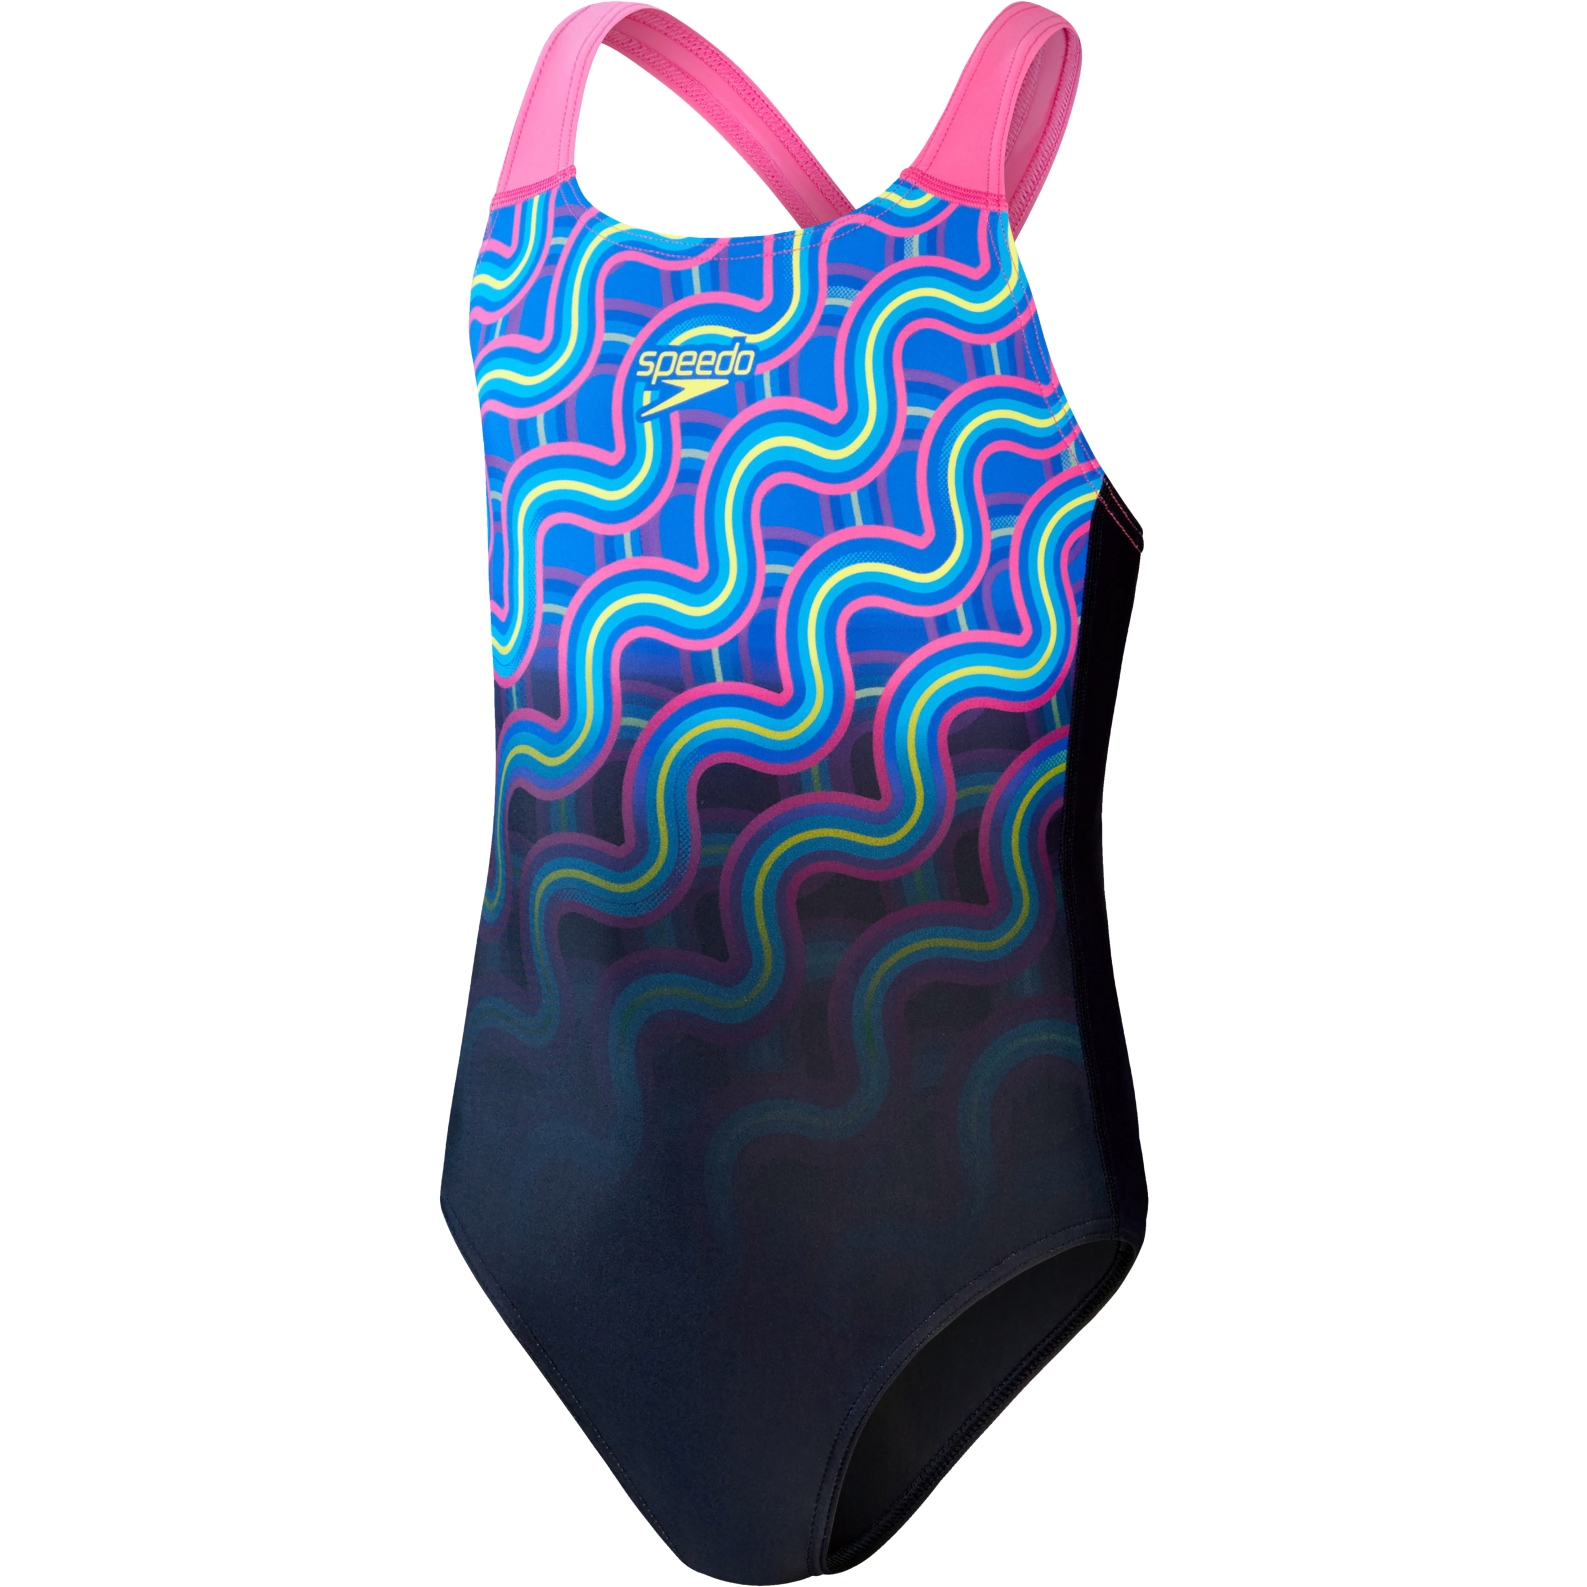 Produktbild von Speedo Digital Placement Splashback Badeanzug Mädchen - true navy/rose violet/beautiful blue/bright yellow/lapis blue